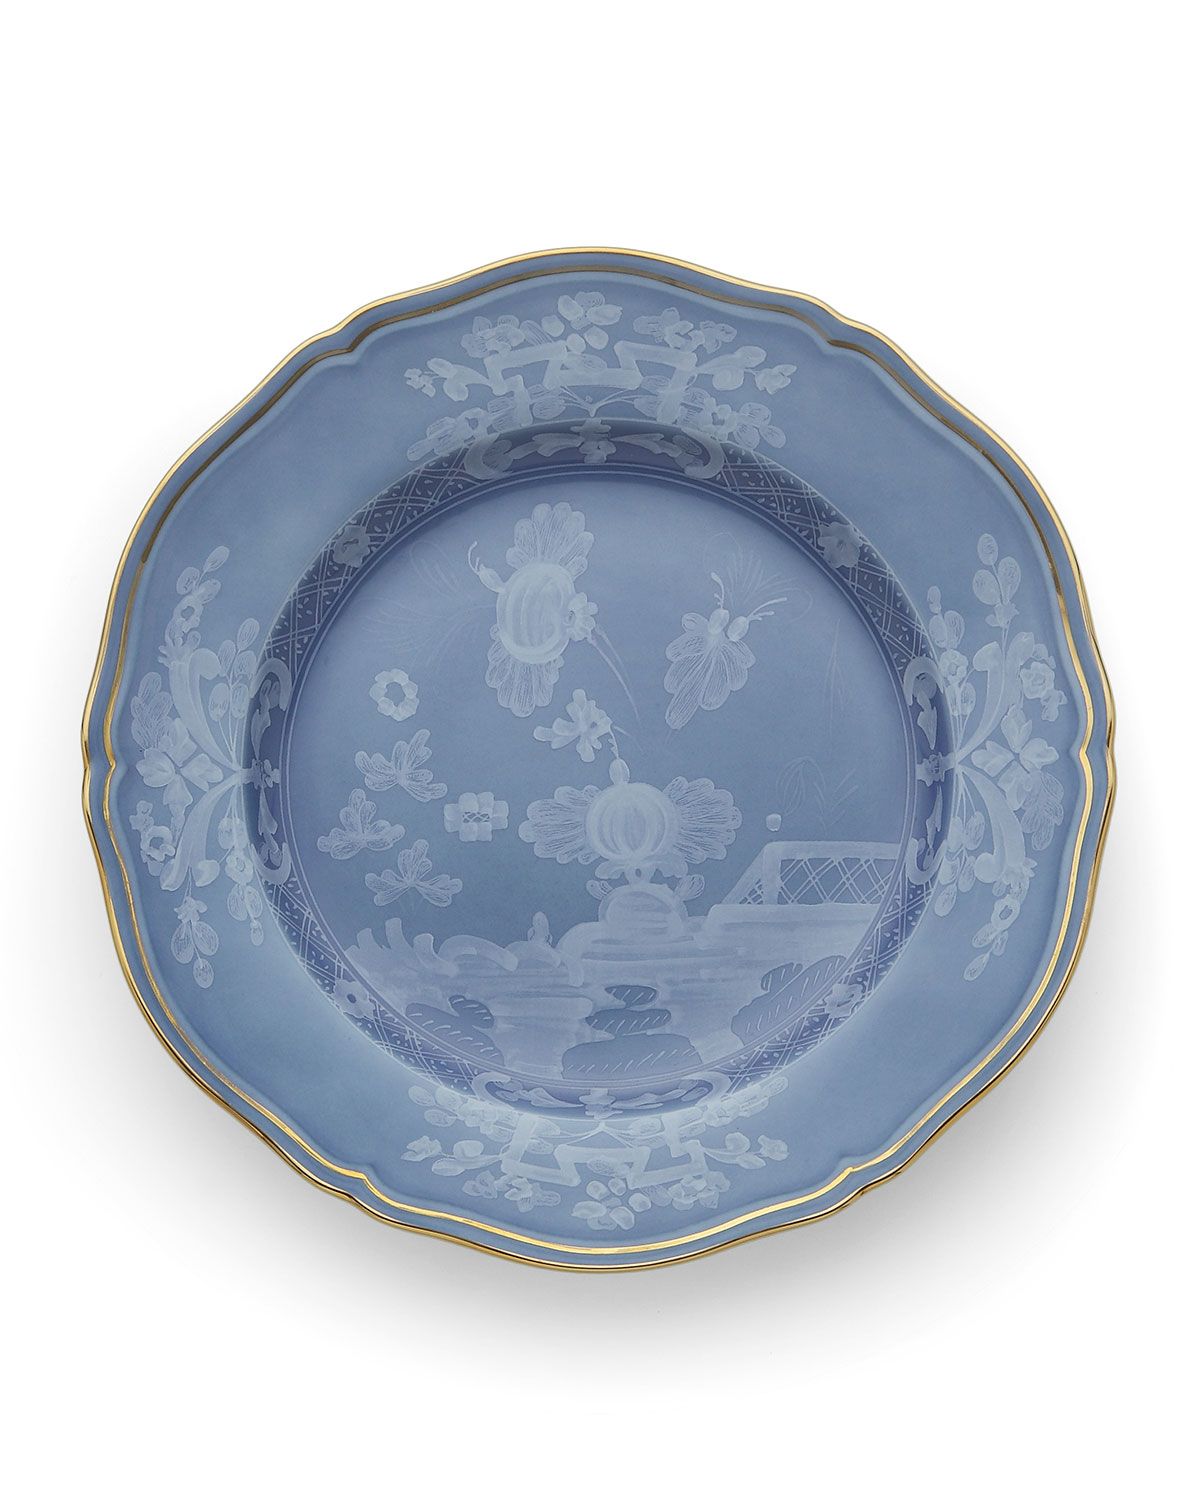 Oriente Italiano Dinner Plate, Pervinca | Neiman Marcus